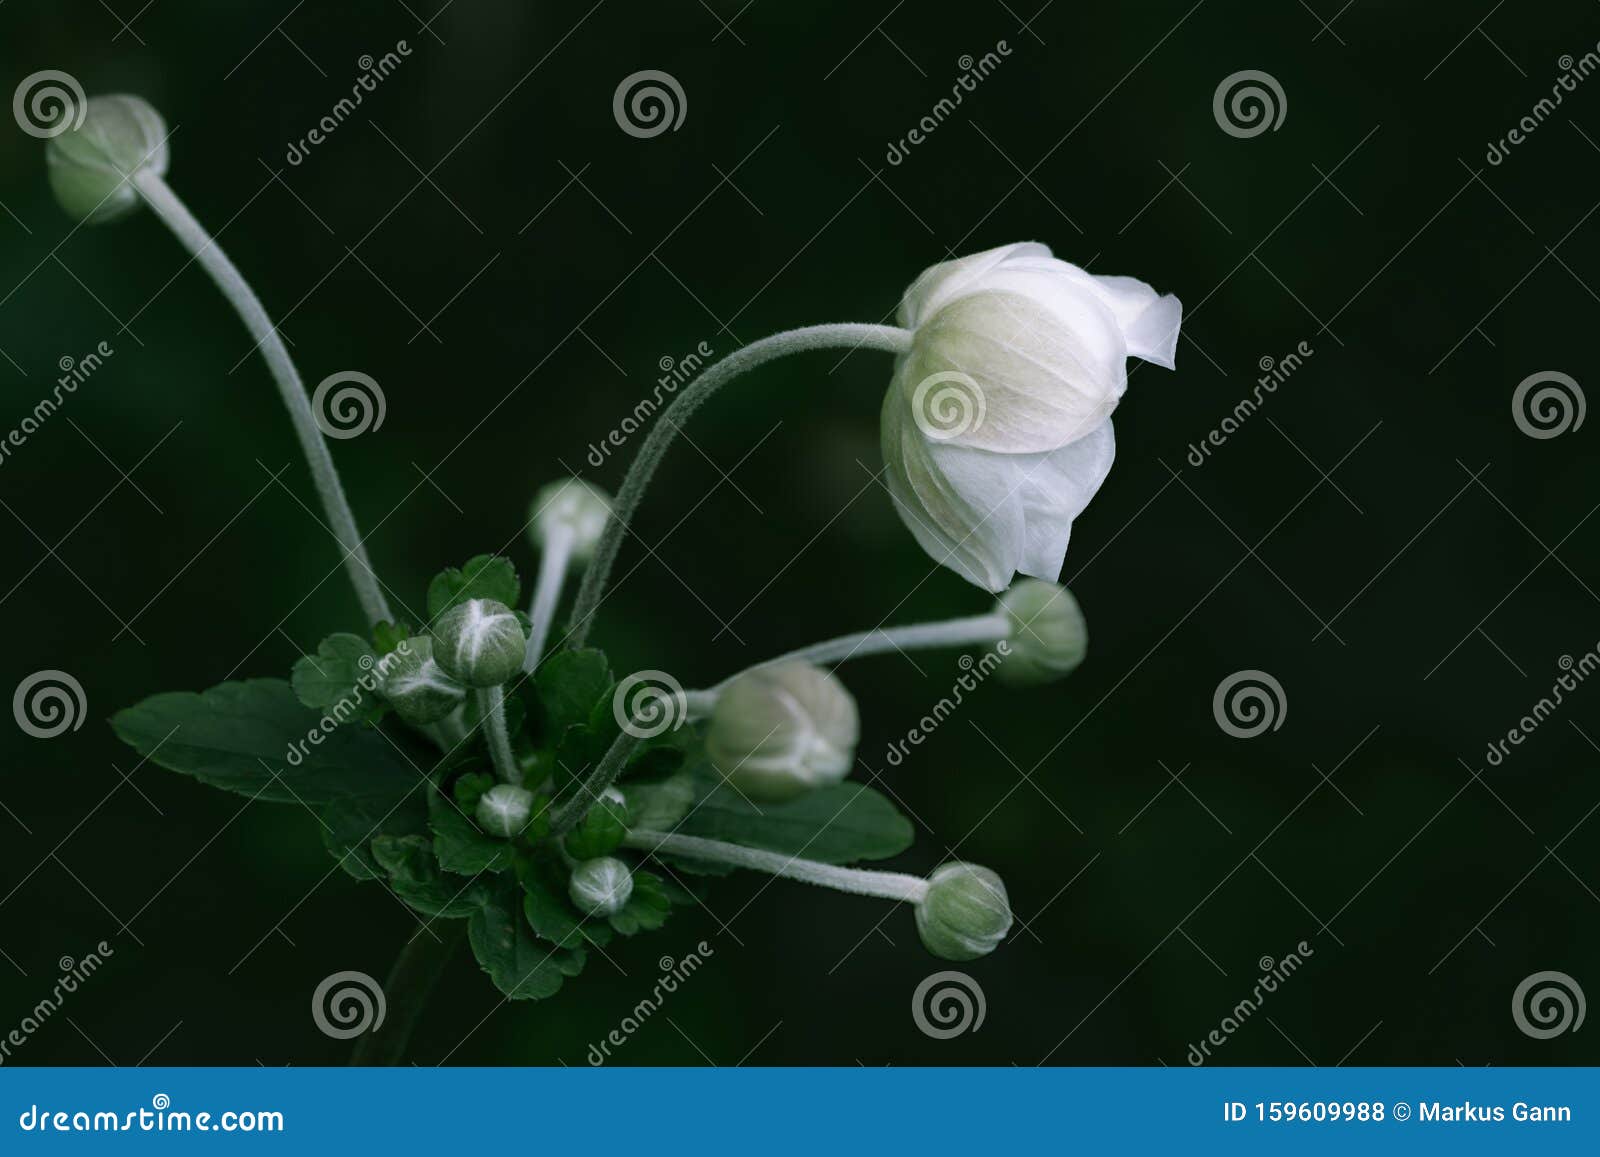 anemone hupehensis white flower